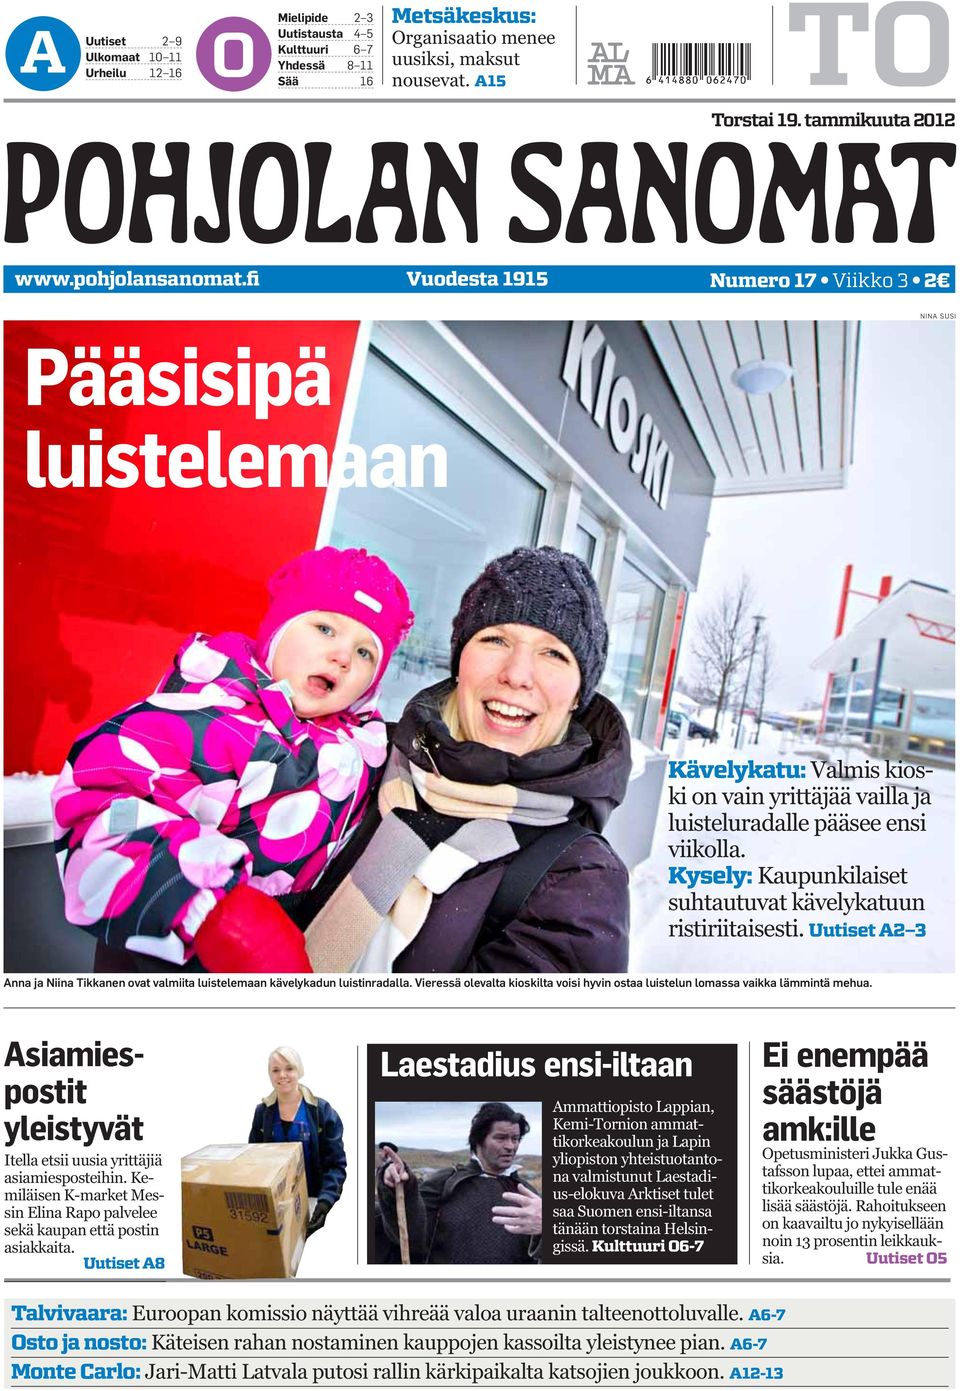 Kysely: Kaupunkilaiset suhtautuvat kävelykatuun ristiriitaisesti. Uutiset A2 3 Anna ja Niina Tikkanen ovat valmiita luistelemaan kävelykadun luistinradalla.